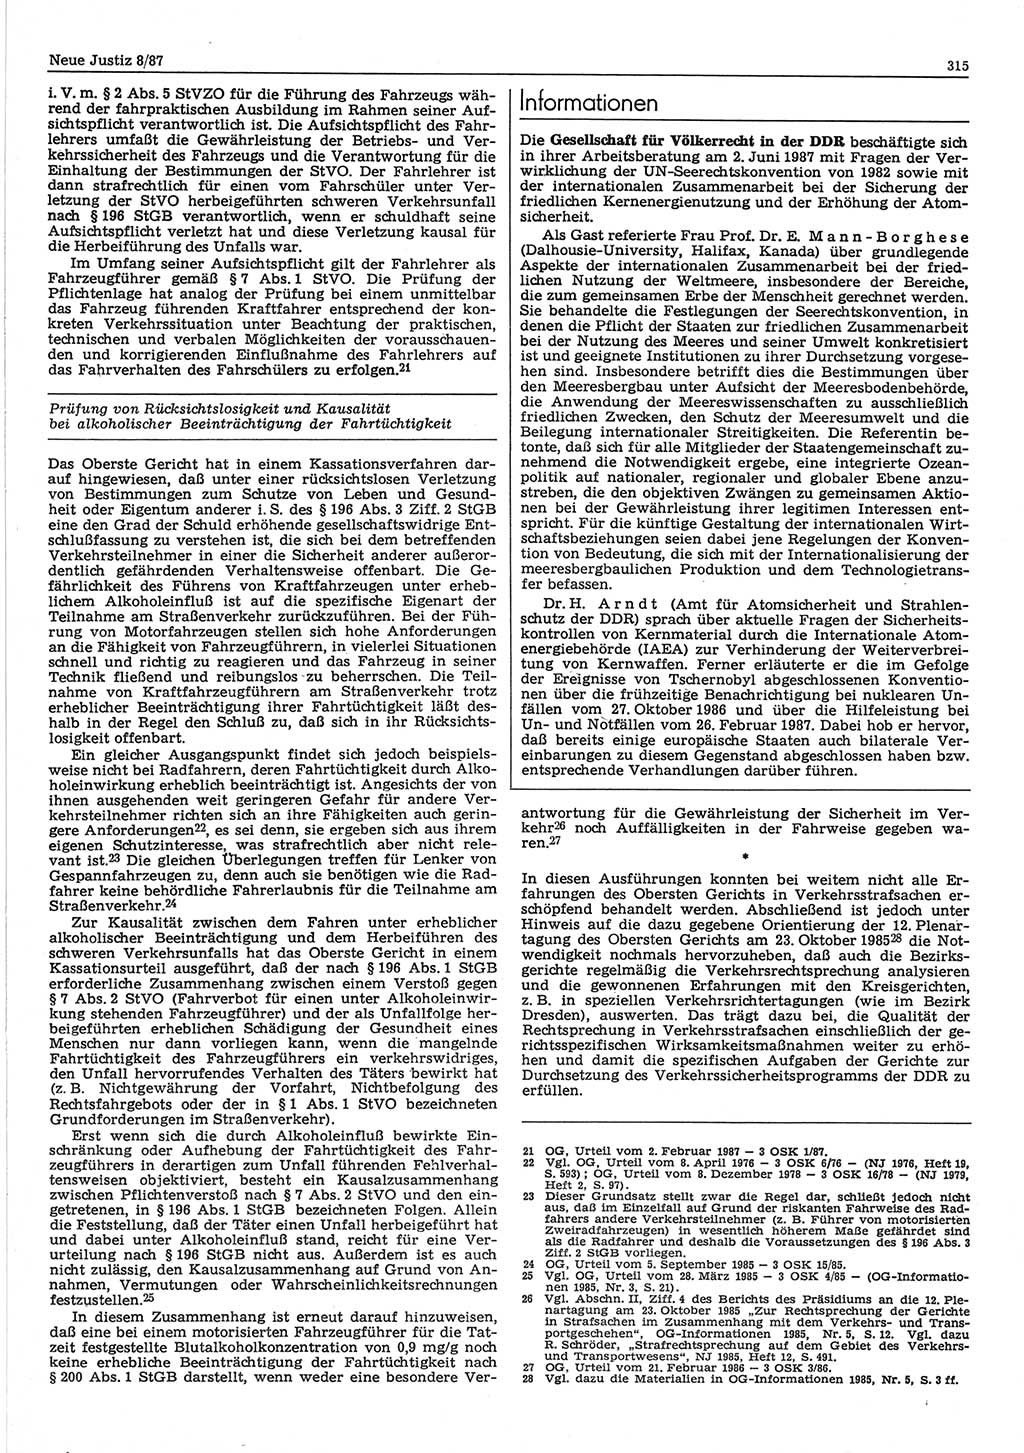 Neue Justiz (NJ), Zeitschrift für sozialistisches Recht und Gesetzlichkeit [Deutsche Demokratische Republik (DDR)], 41. Jahrgang 1987, Seite 315 (NJ DDR 1987, S. 315)